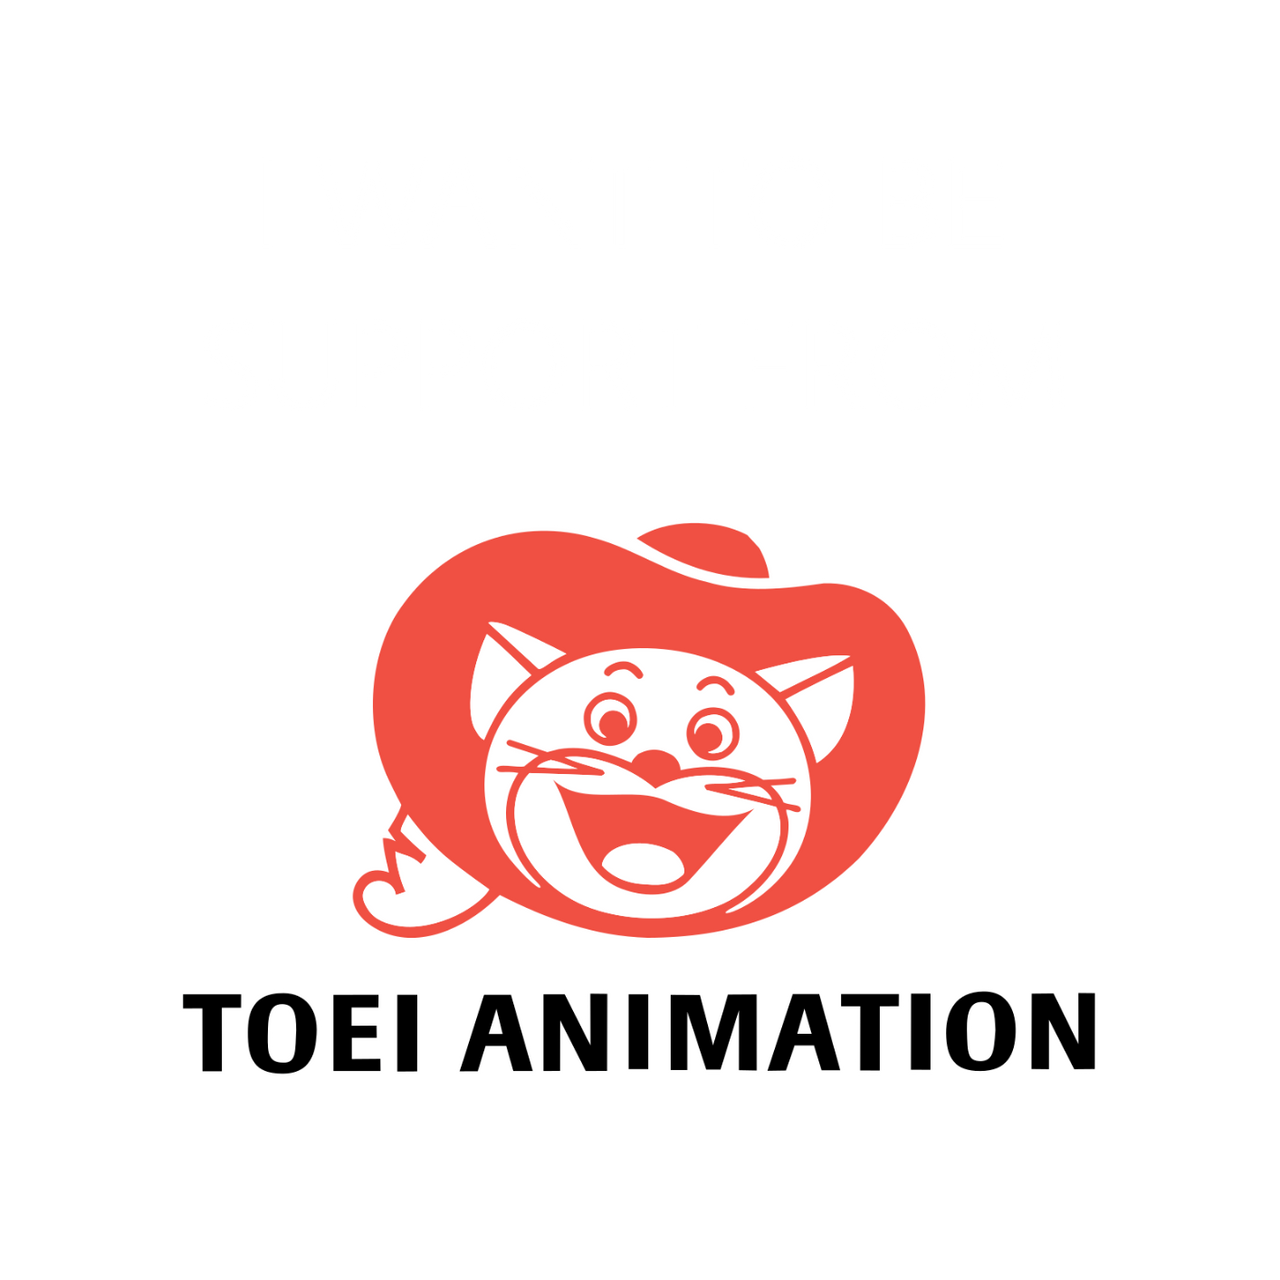 Toei Animation